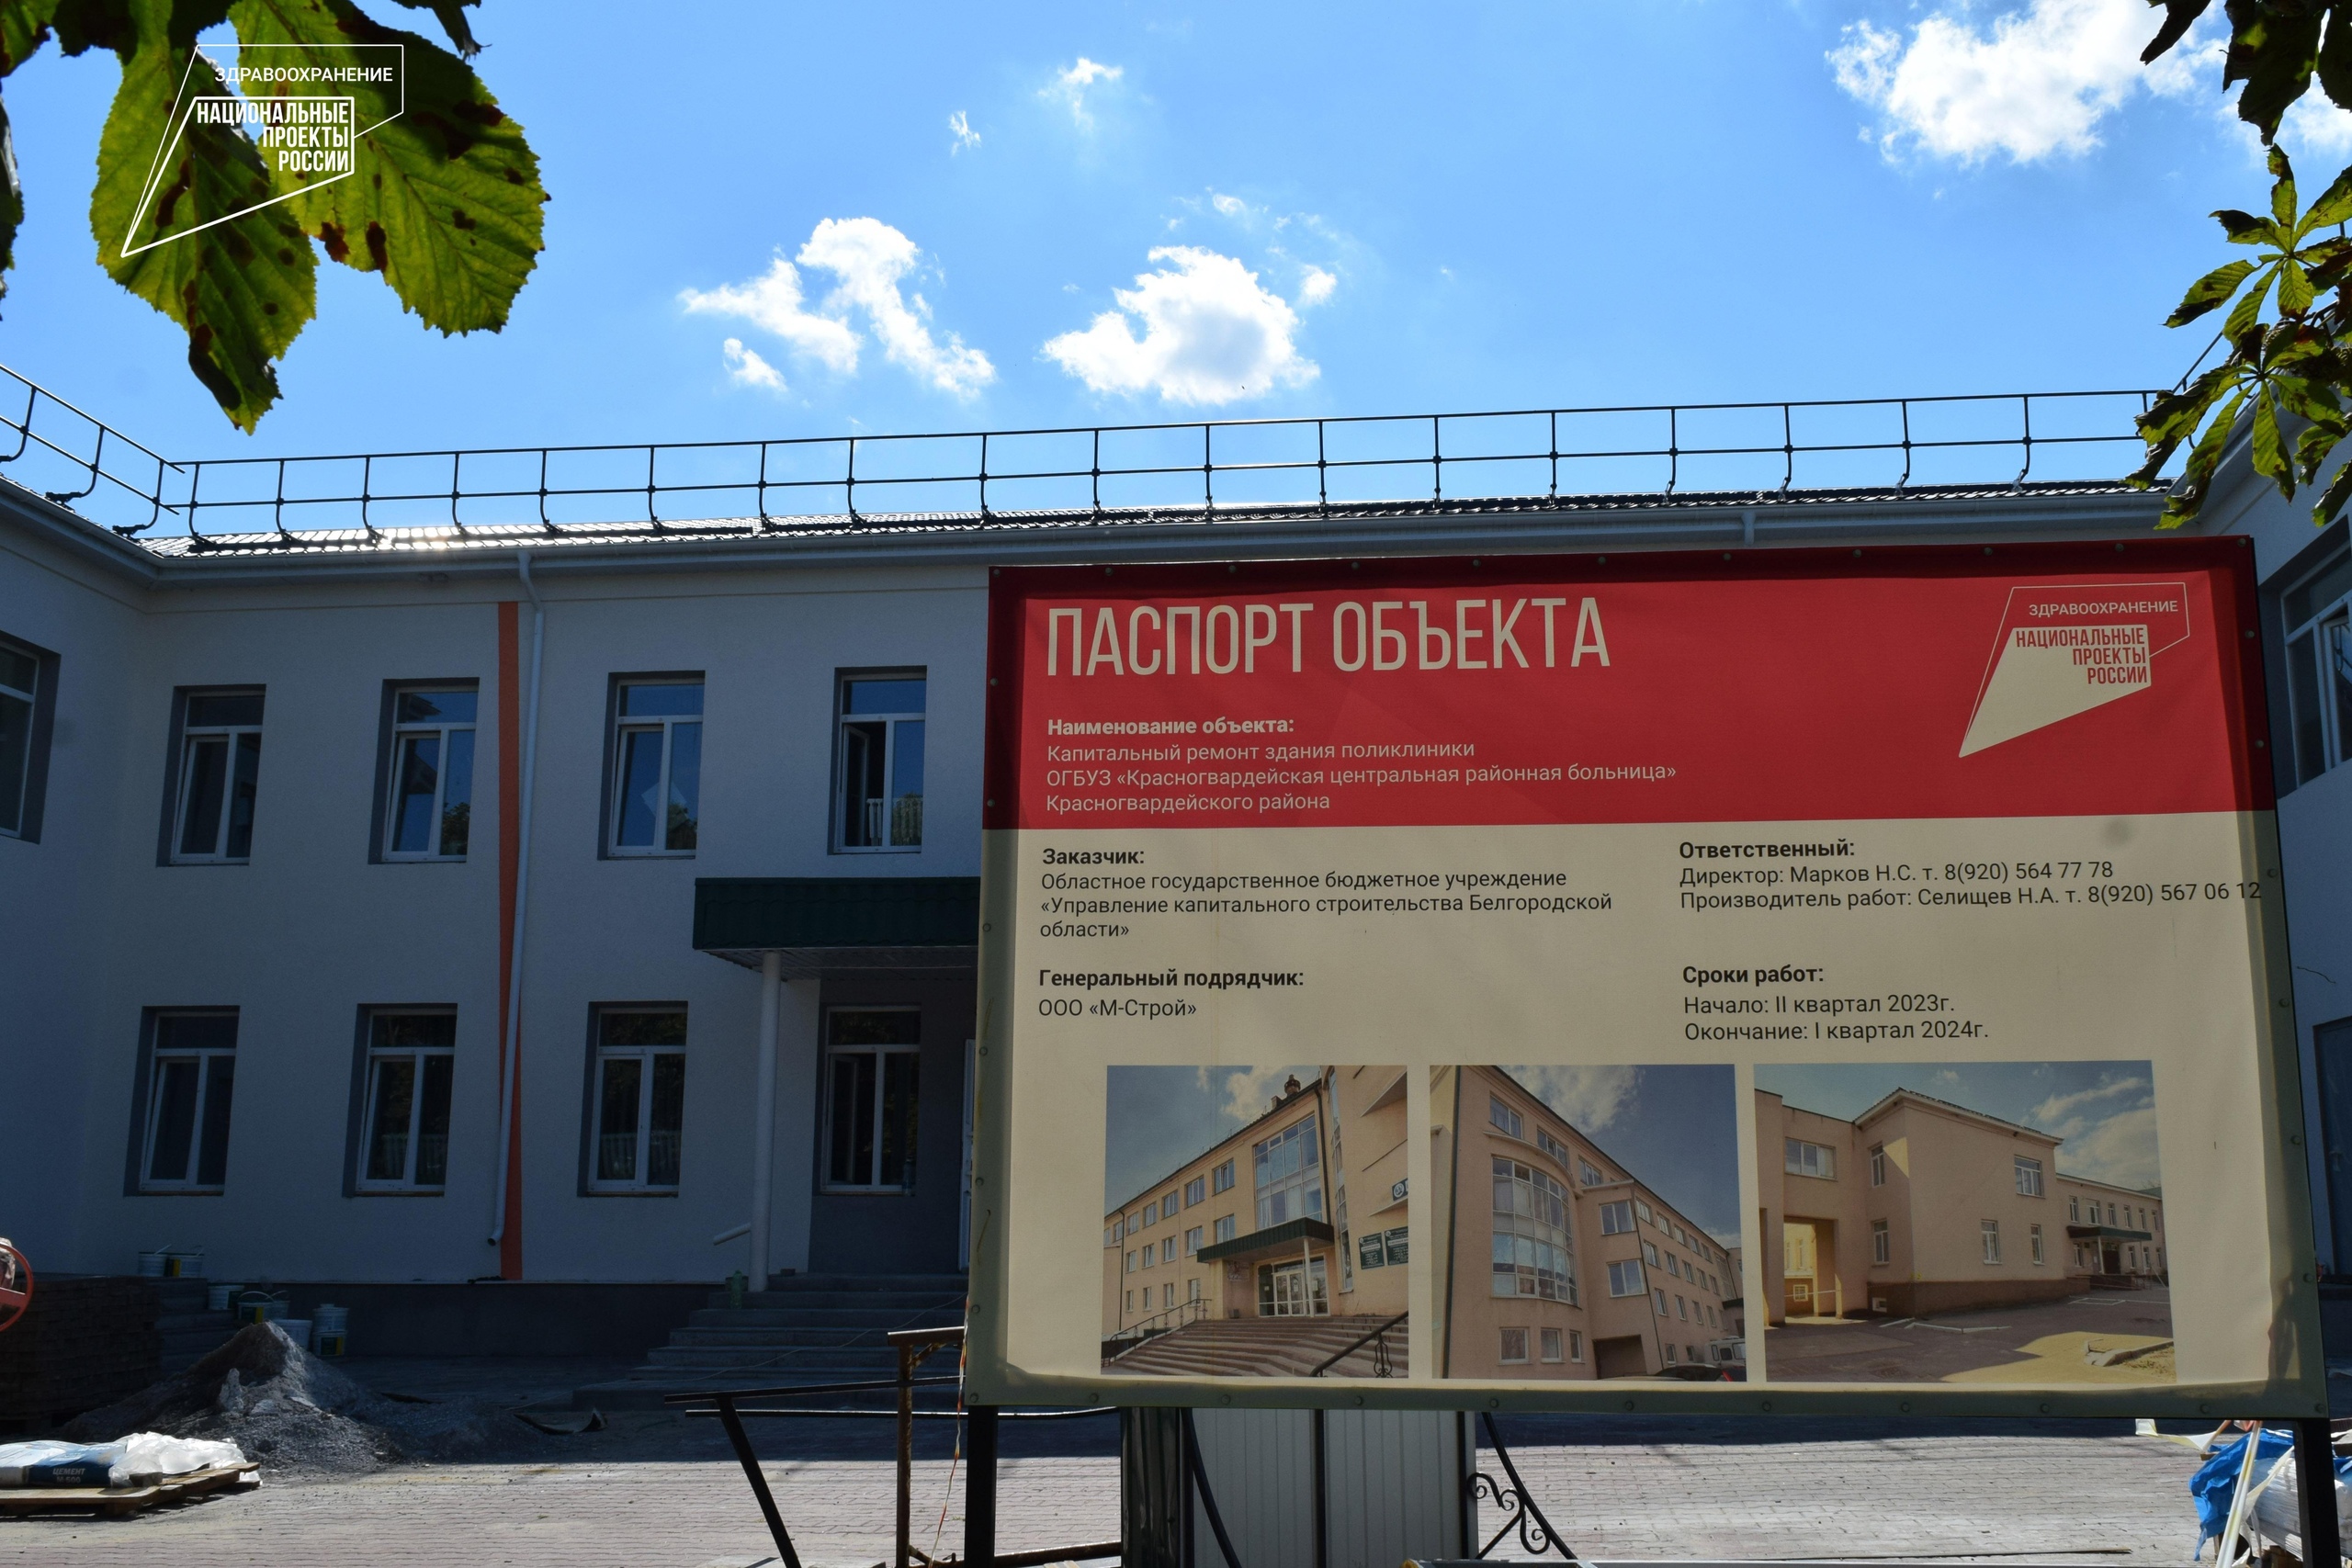 В Бирюче строители приступили к утеплению фасада четырёхэтажного корпуса поликлиники.